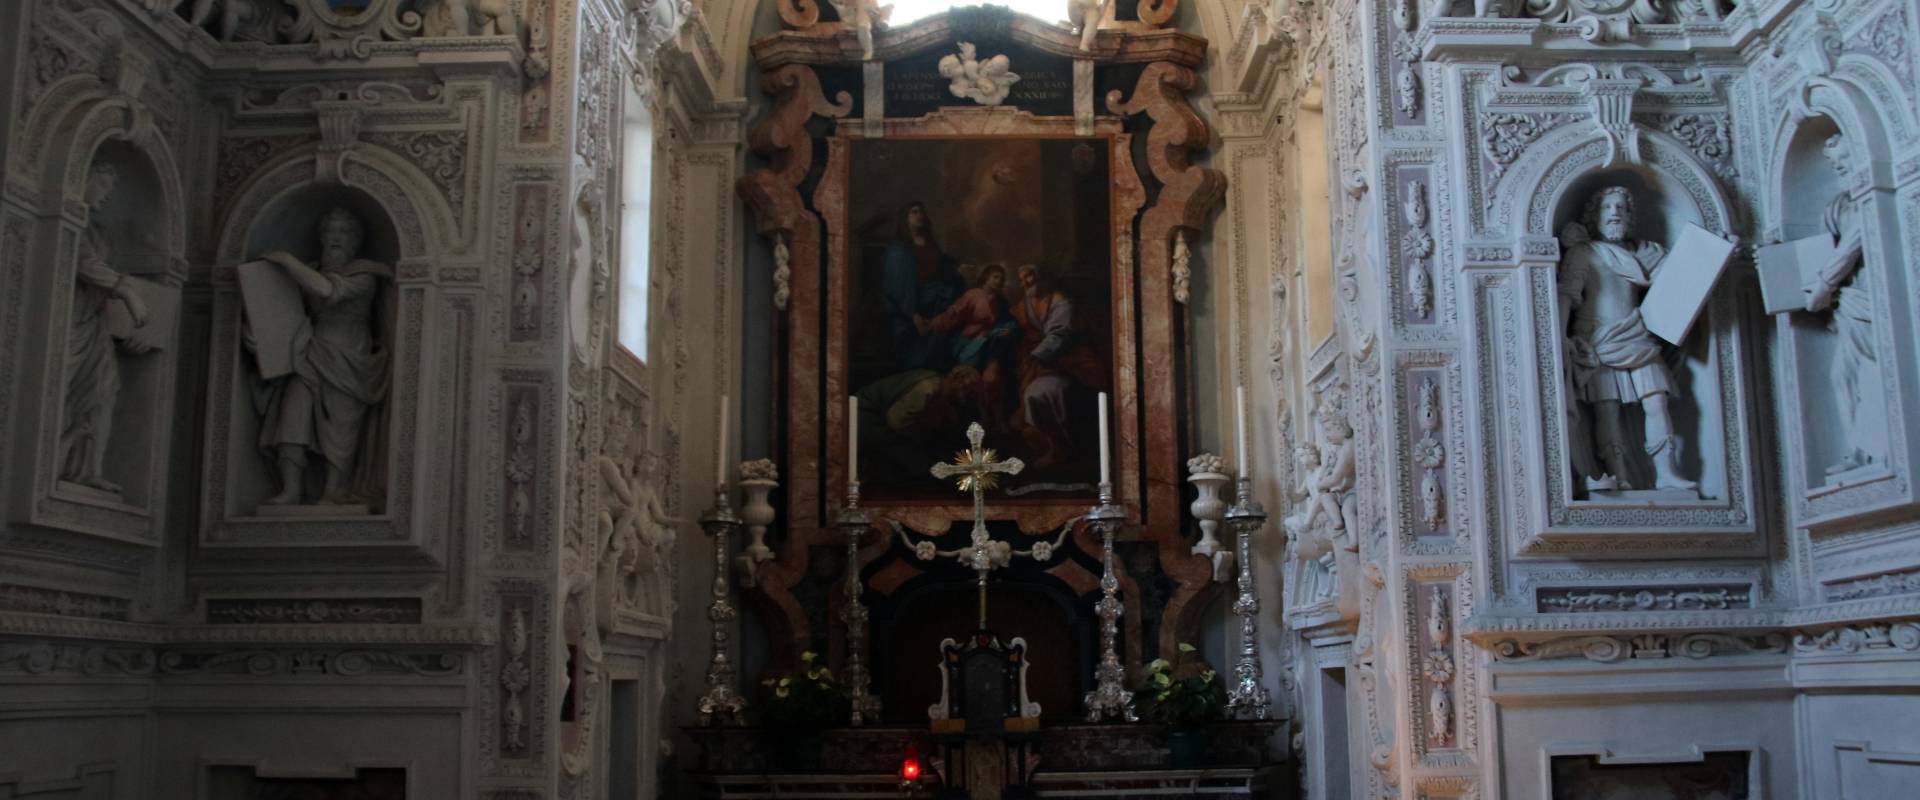 Collegiata di Santa Maria Assunta (Castell'Arquato), Cappella di San Giuseppe 02 photo by Mongolo1984